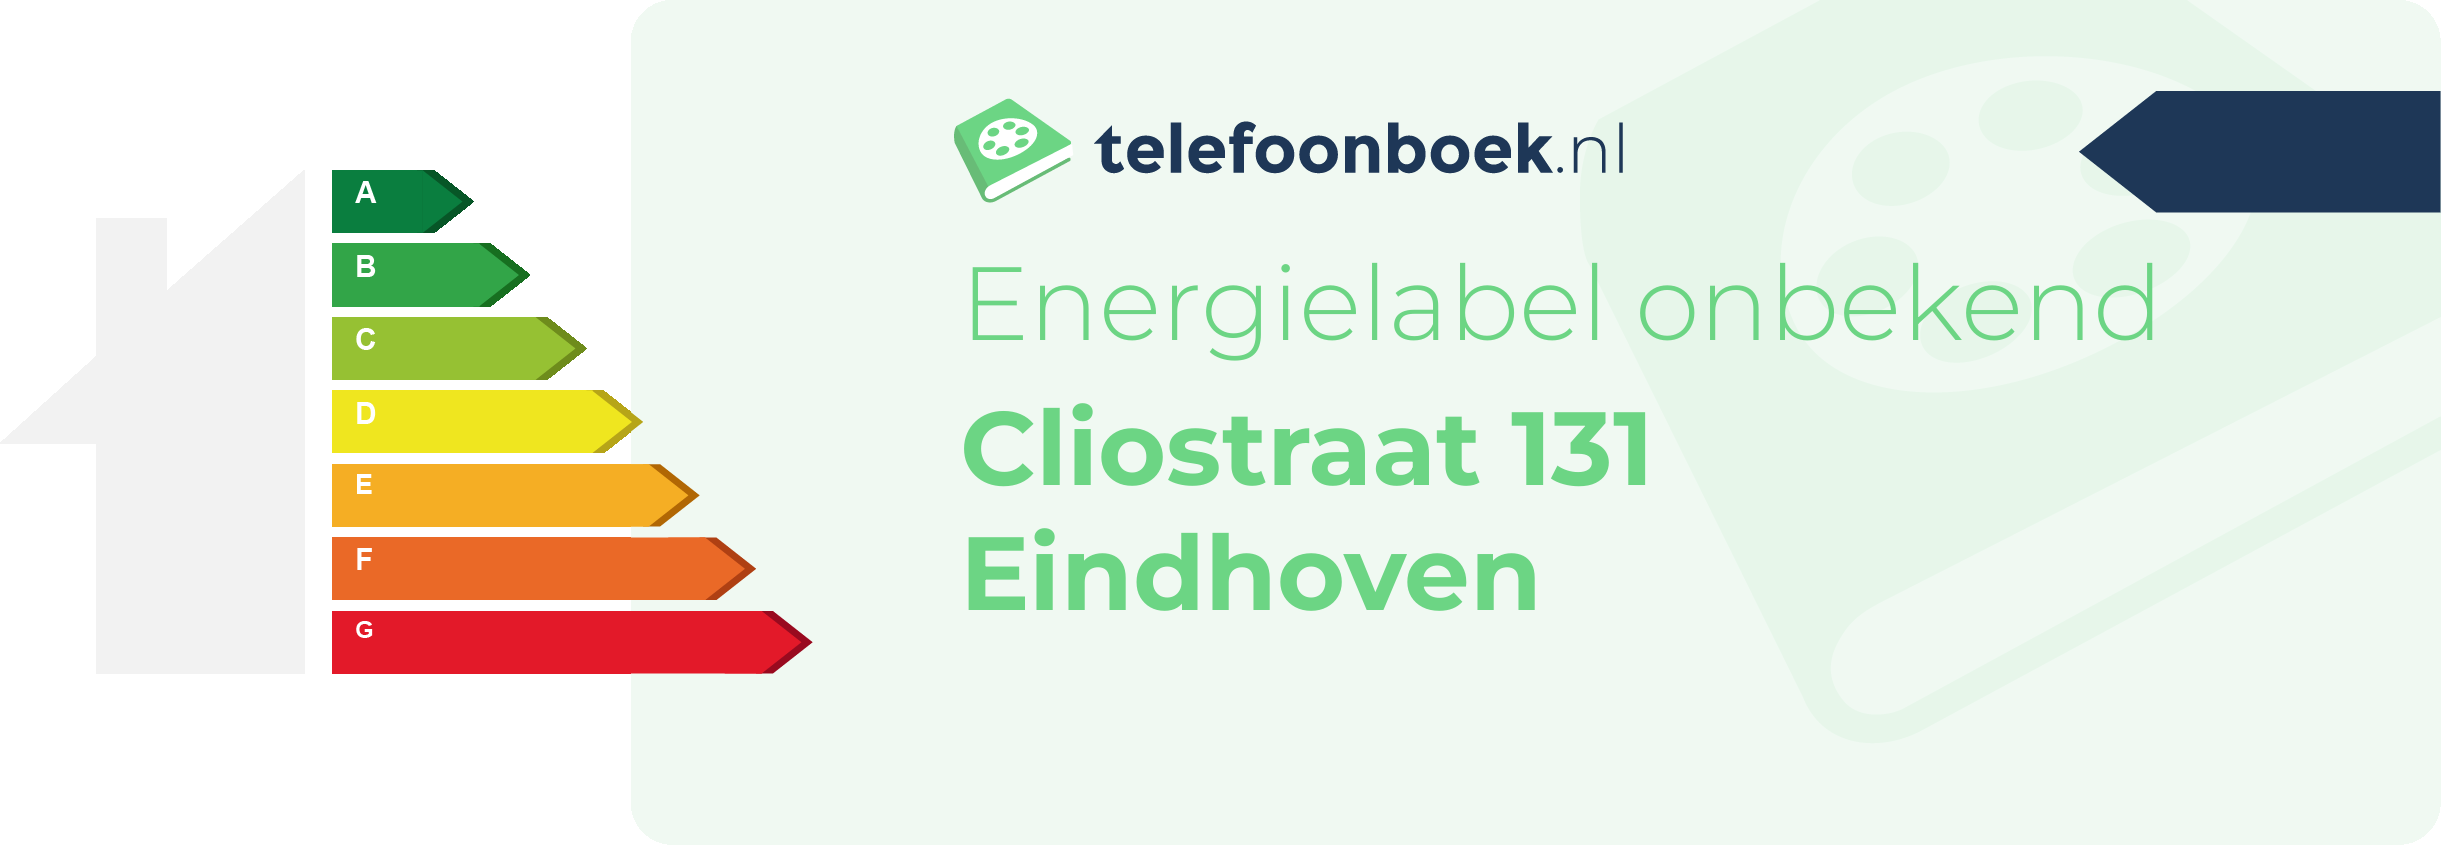 Energielabel Cliostraat 131 Eindhoven